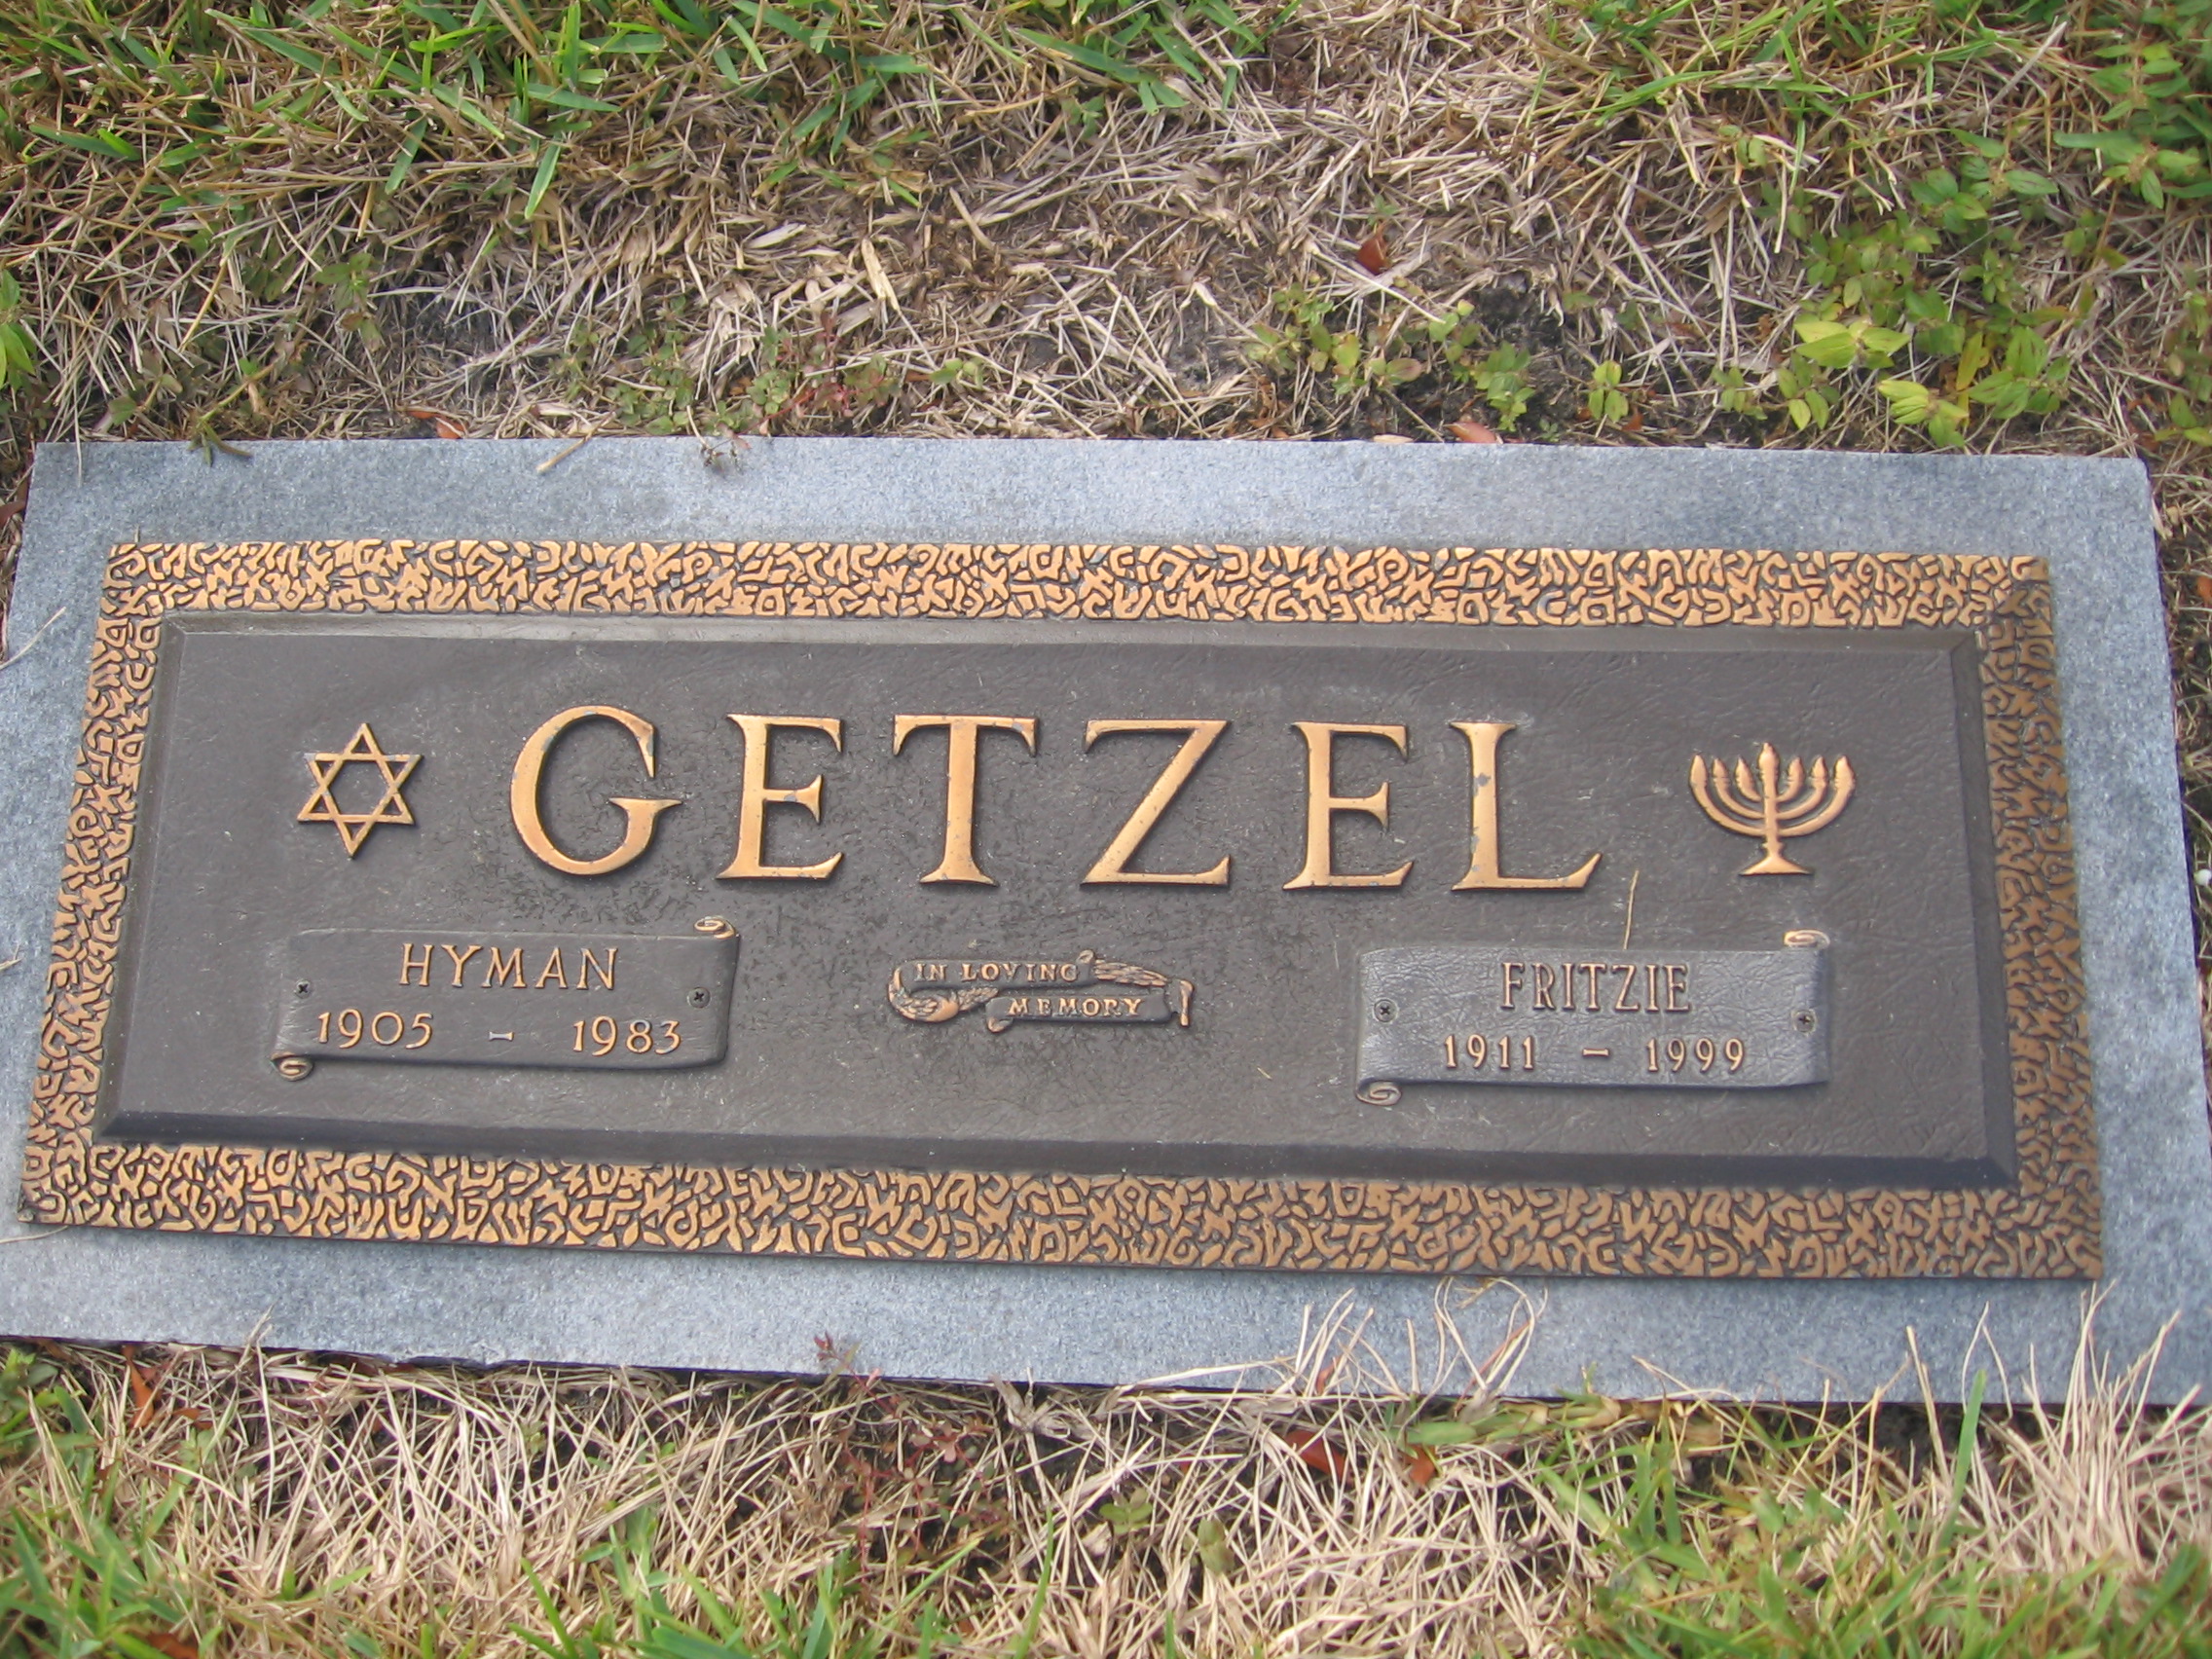 Hyman Getzel